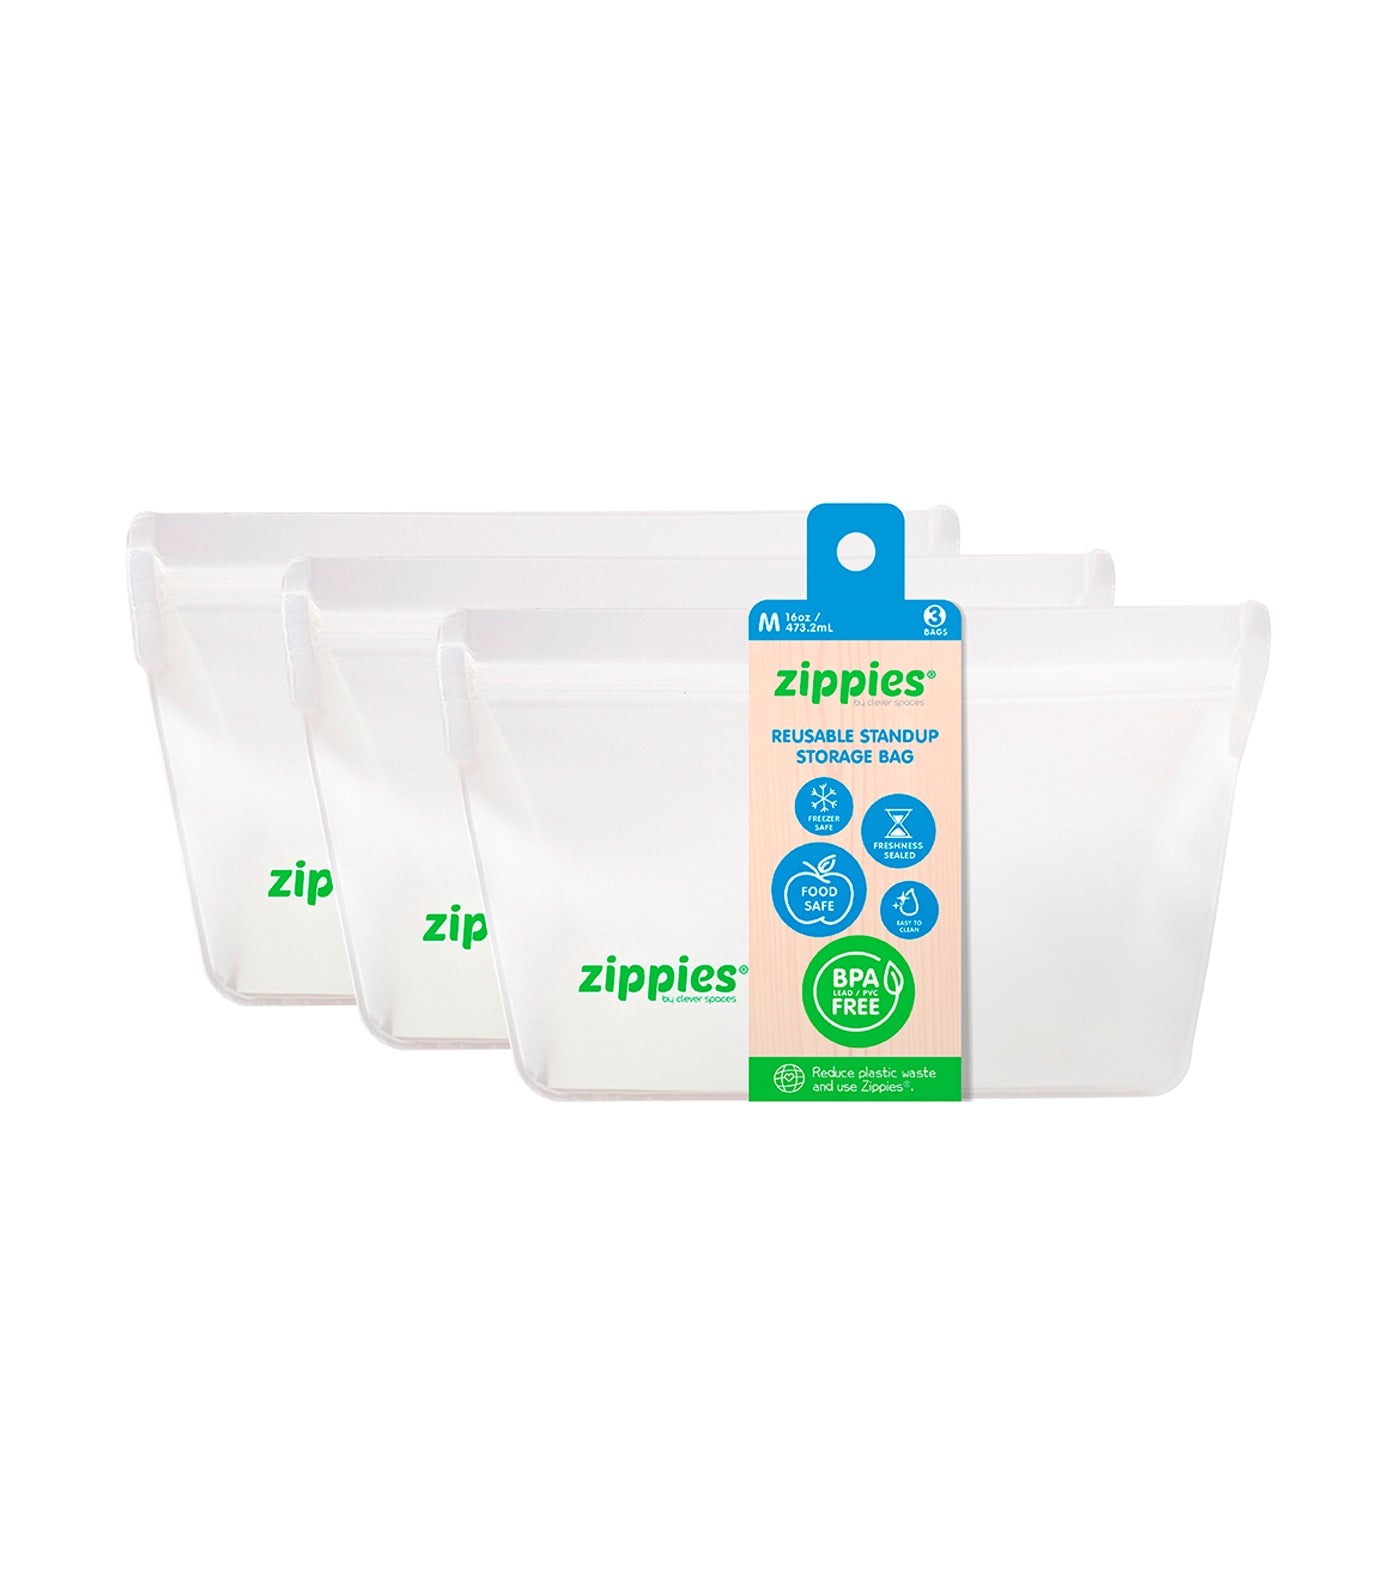 zippies storage bags - medium (3 bags)